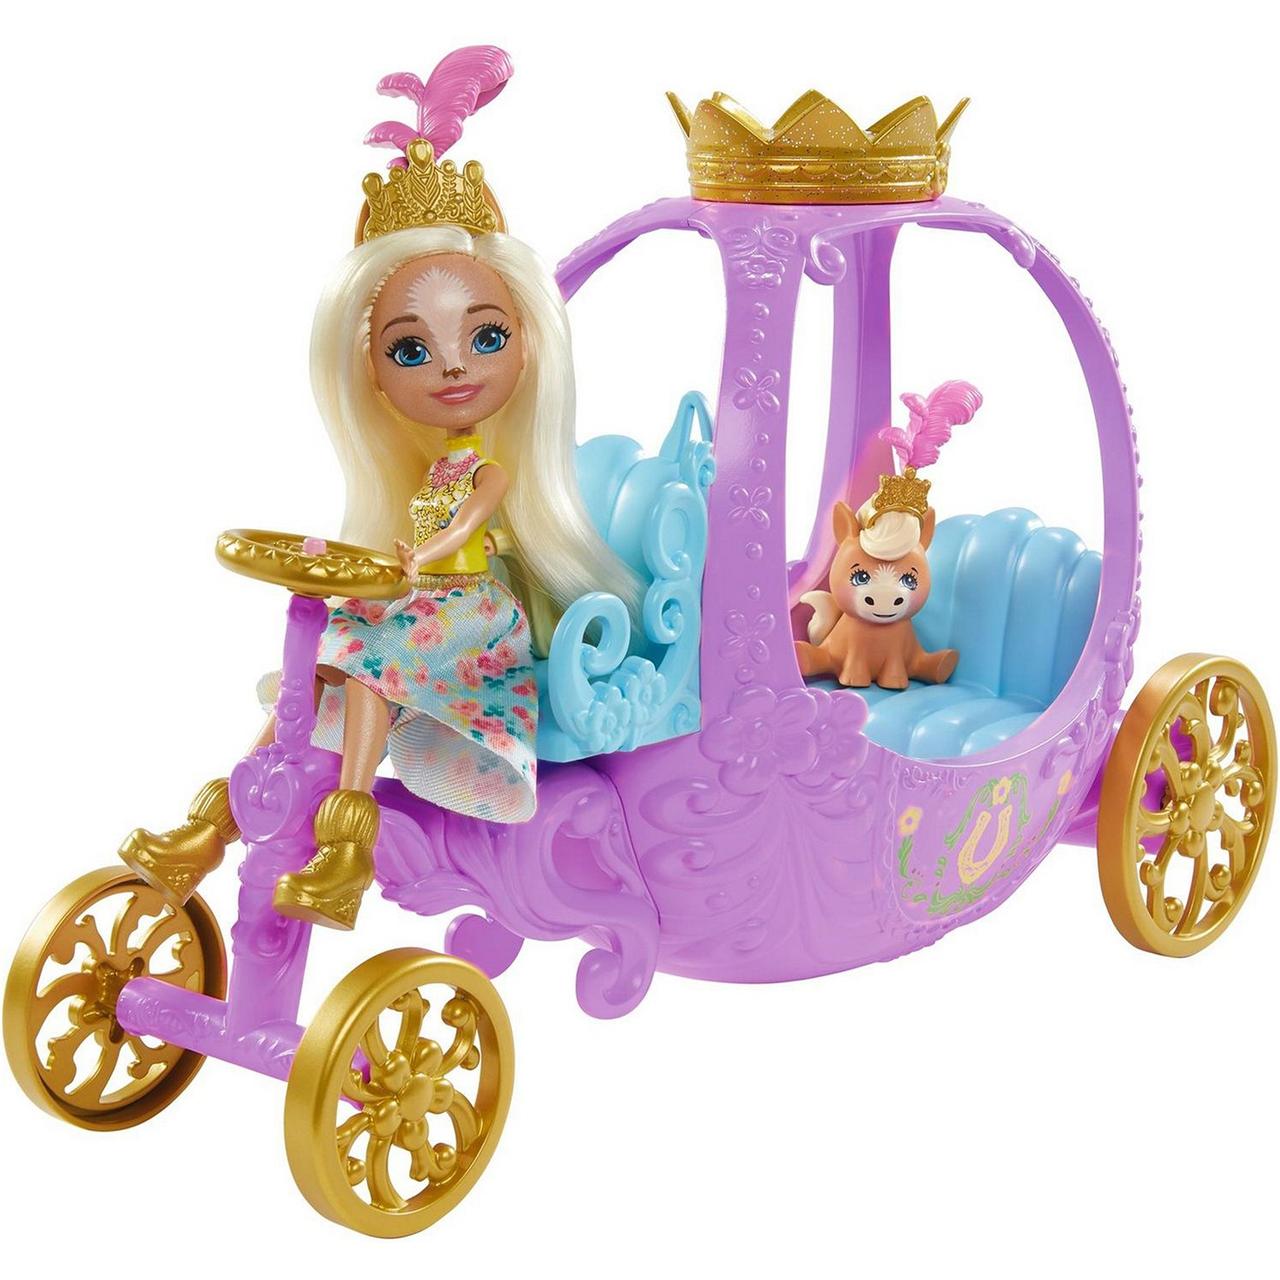 Игровой набор Энчантималс Королевская карета c куклой Пеола Пони GYJ16 Mattel